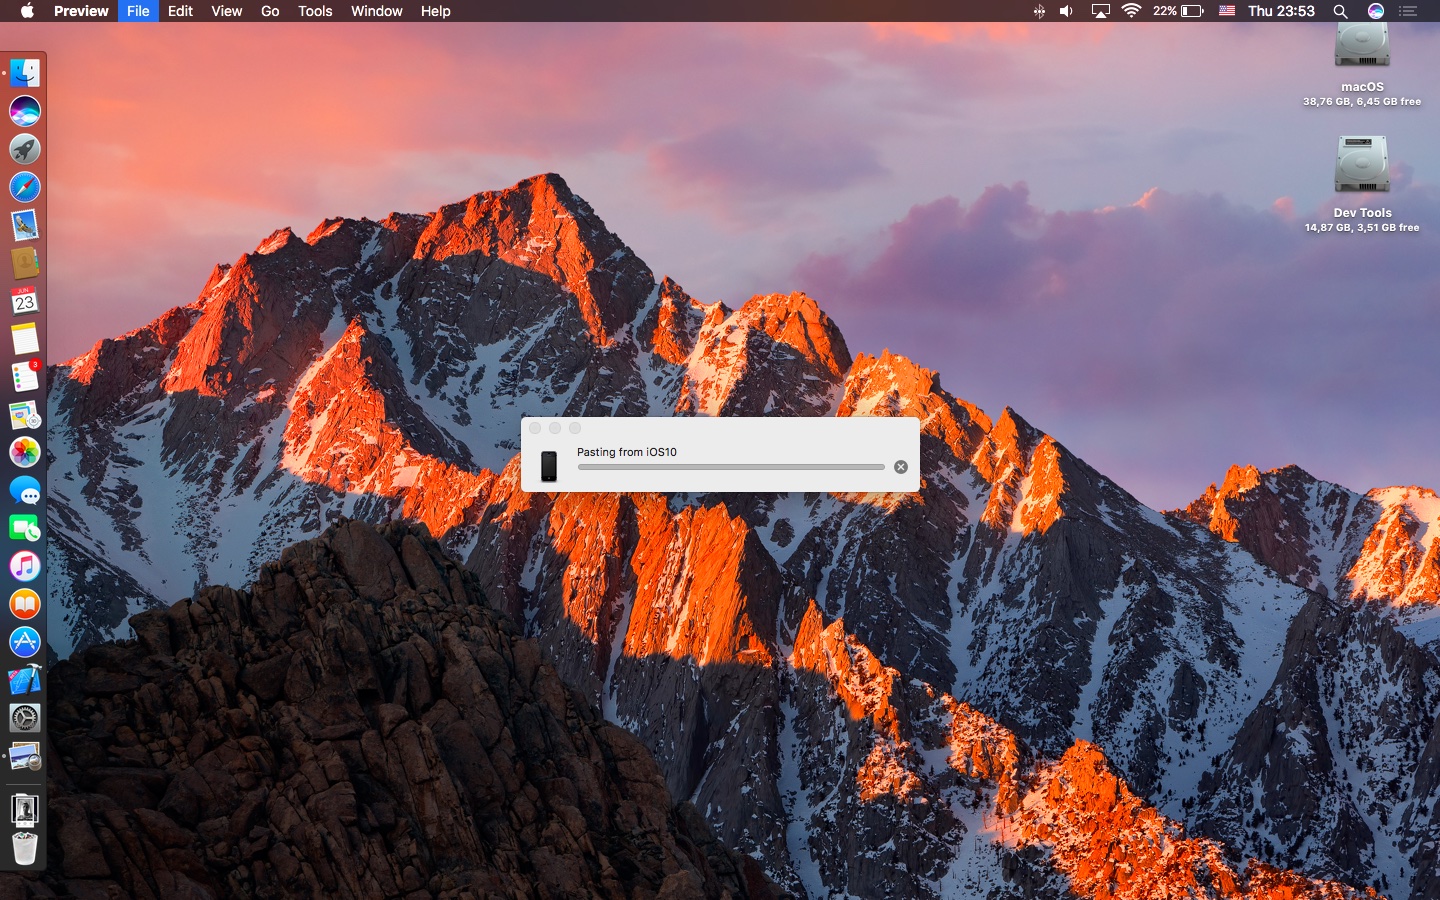 macOS-Sierra-Universal-Clipboard-image-Mac-screenshot-002.jpg